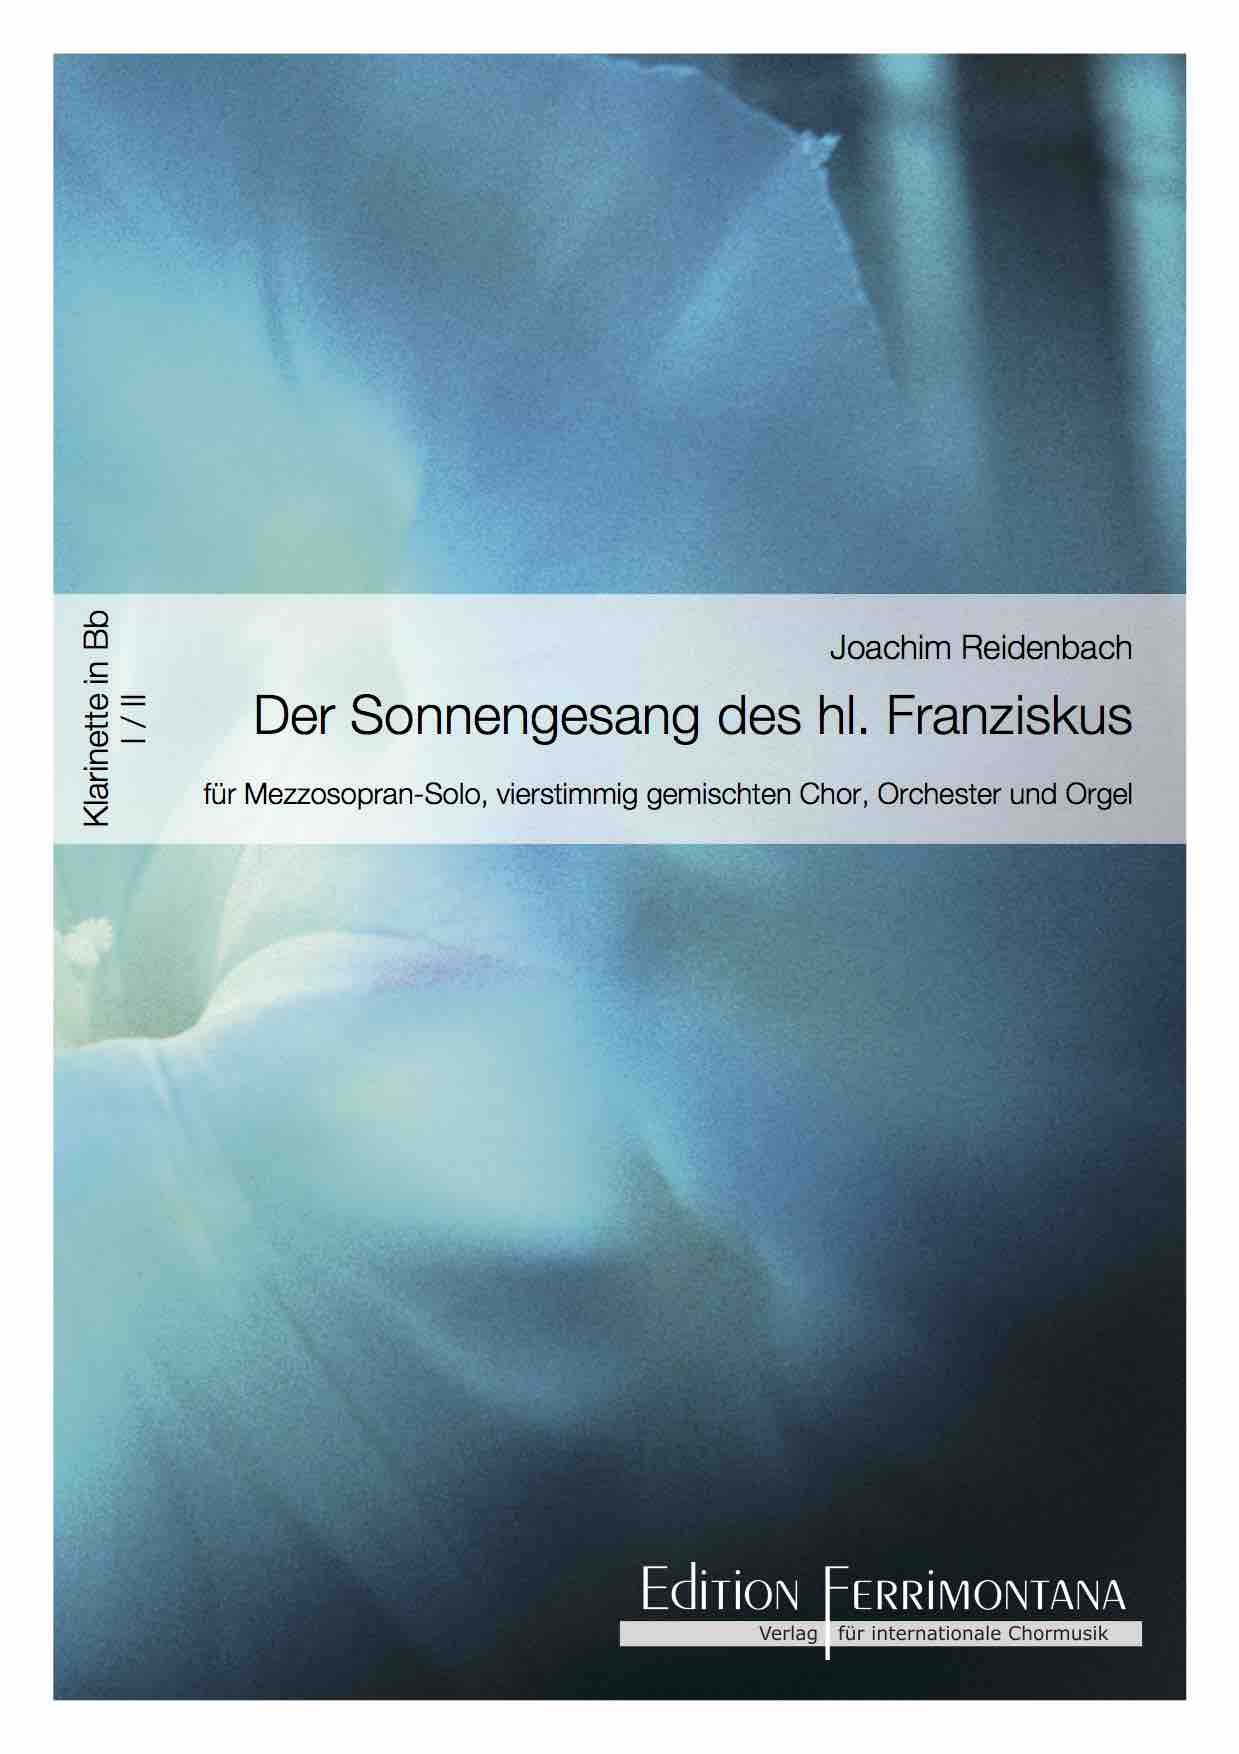 Reidenbach: Der Sonnengesang des heiligen Franziskus - Klarinette I und II